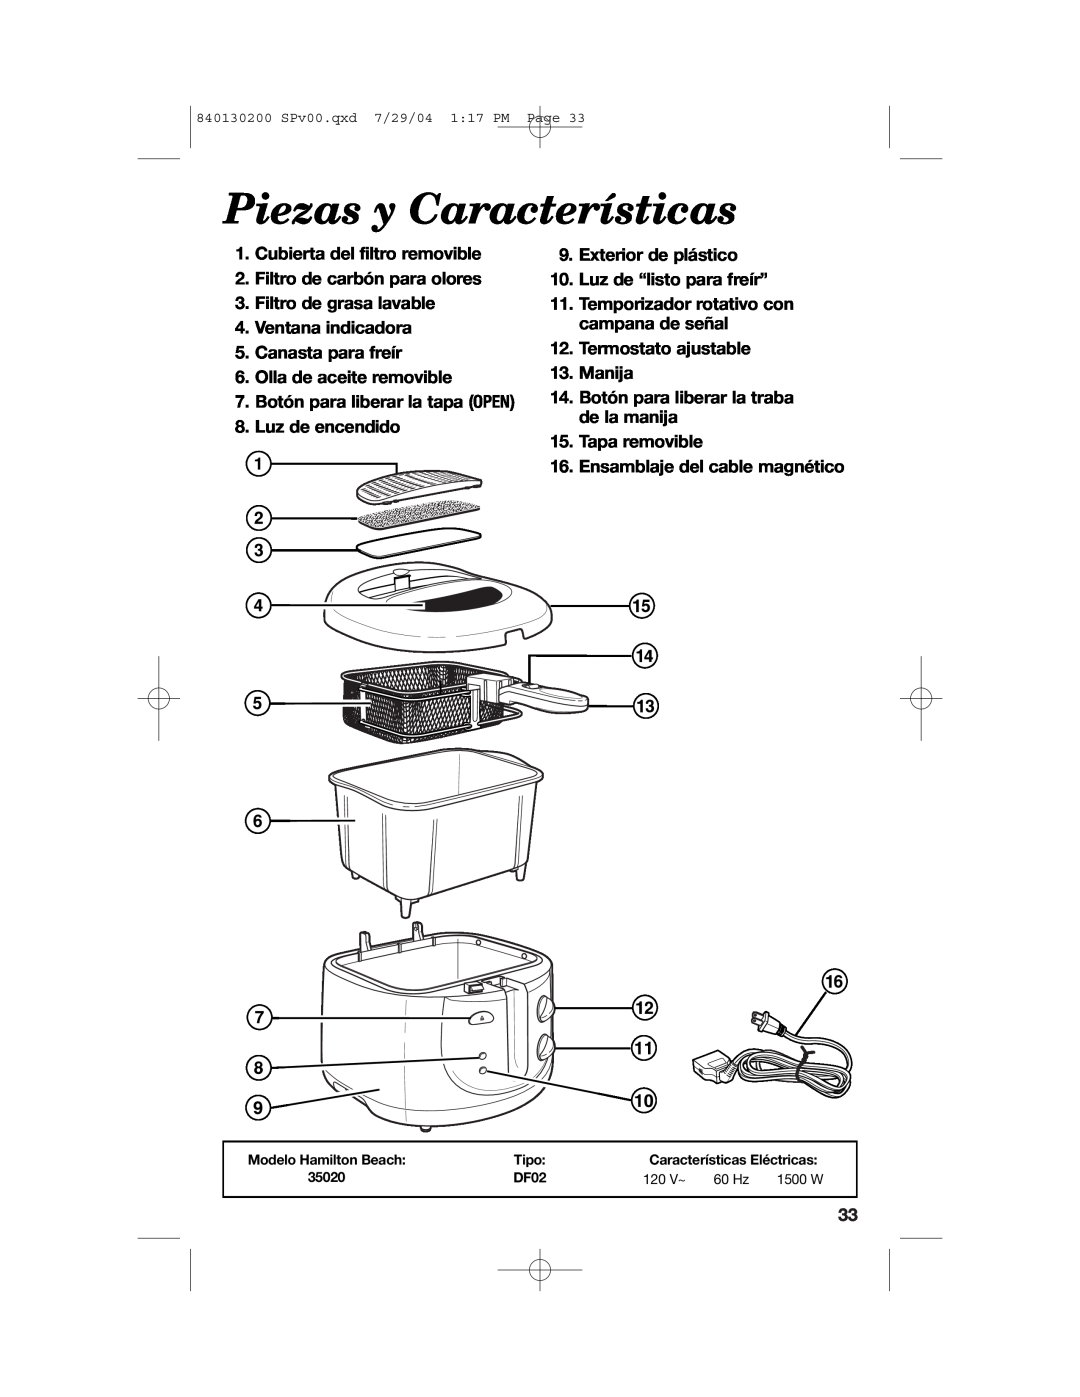 Hamilton Beach 35020C manual Piezas y Características, Cubierta del filtro removible 2. Filtro de carbón para olores 